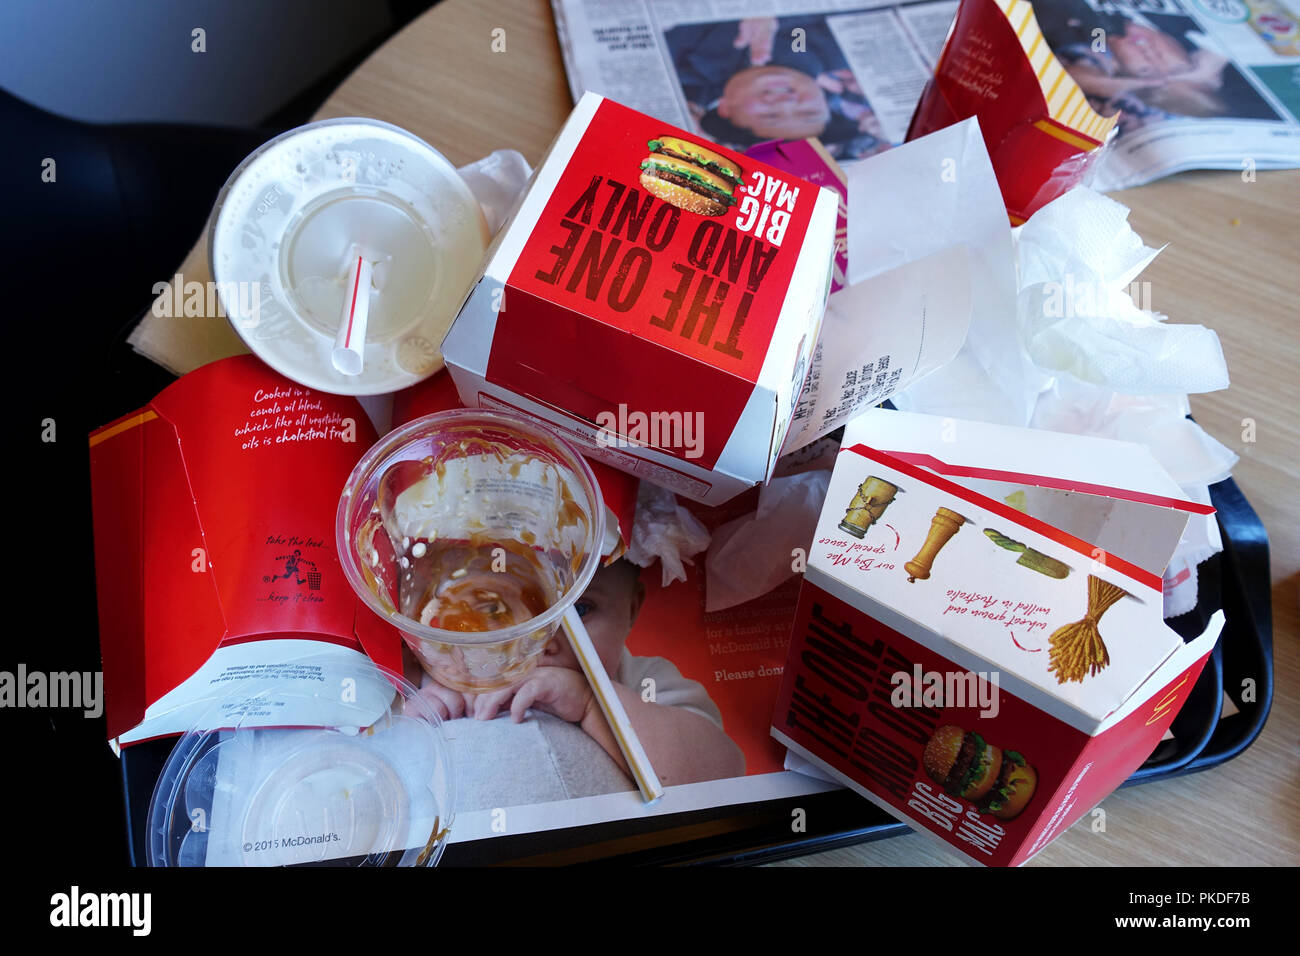 Australian McDonald's vuoto bere e mangiare i contenitori di cartone Foto Stock